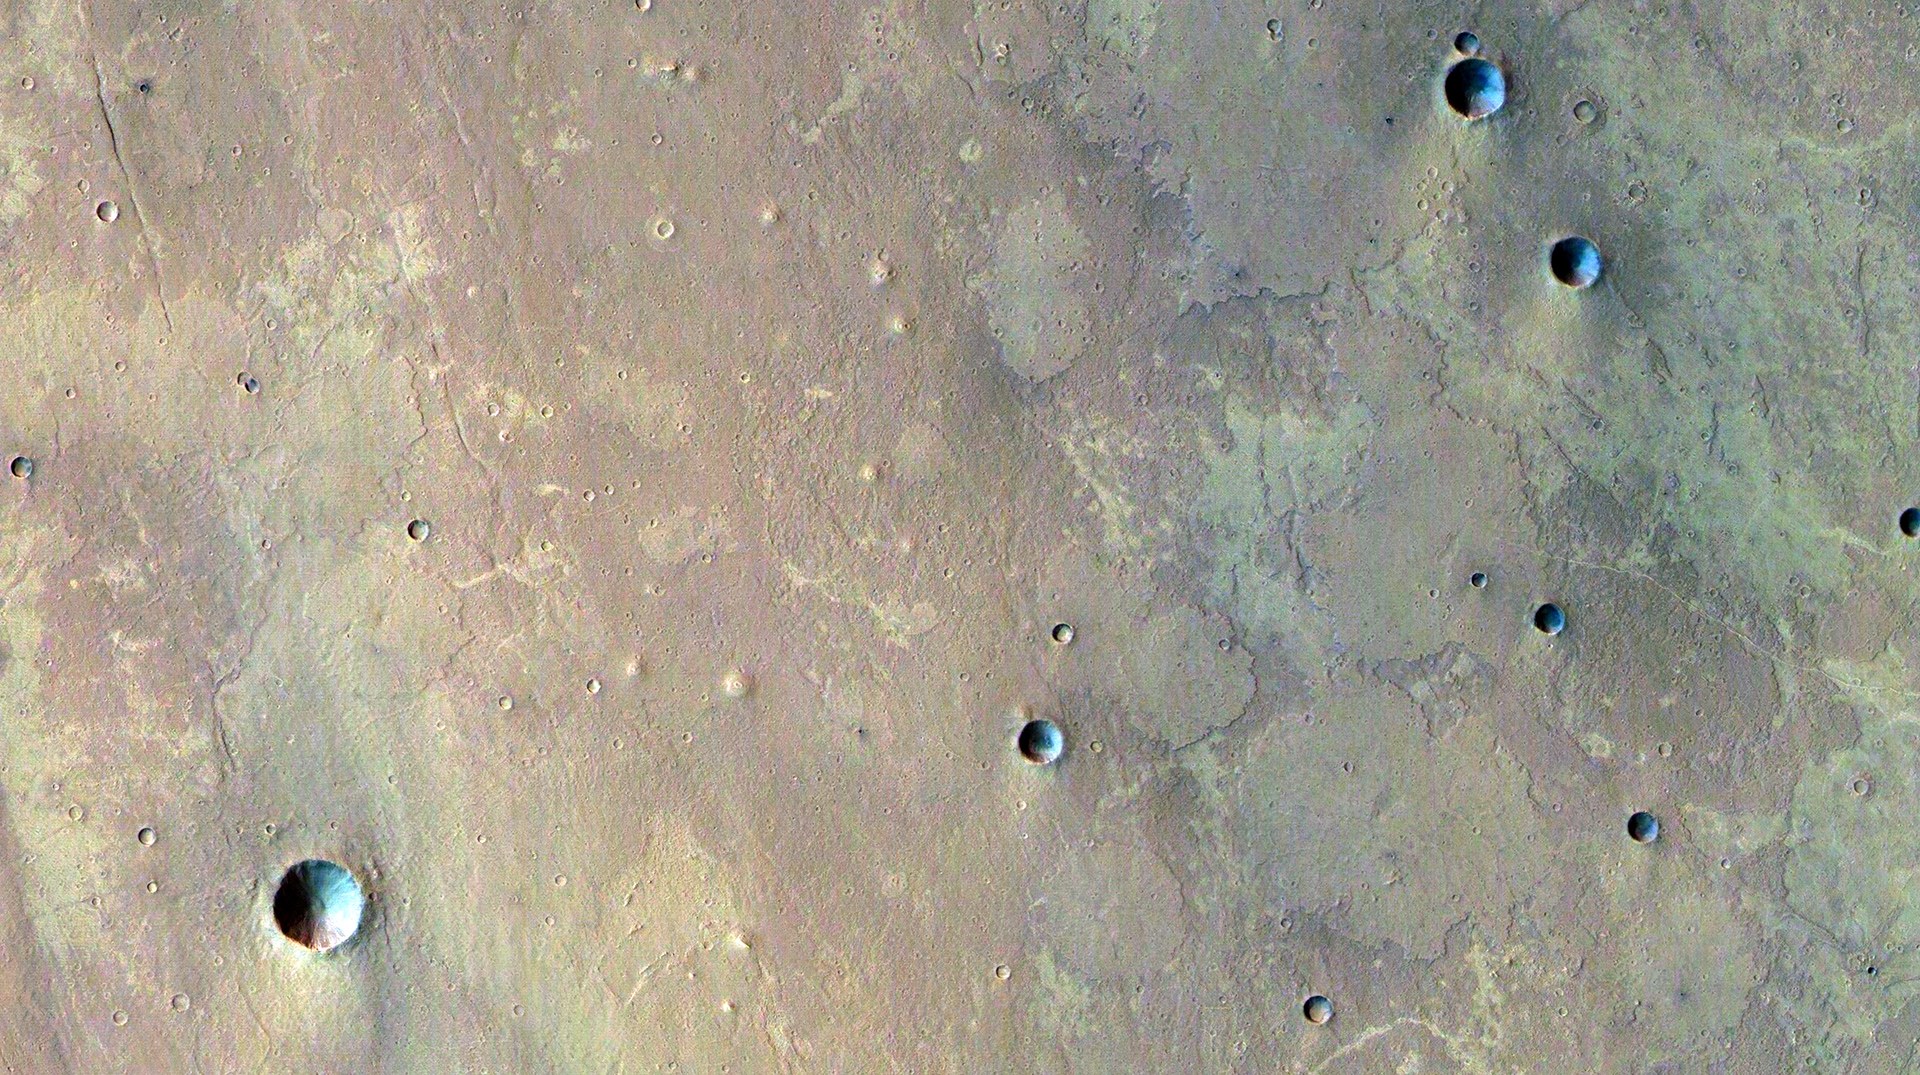 Mud volcanoes on Mars?